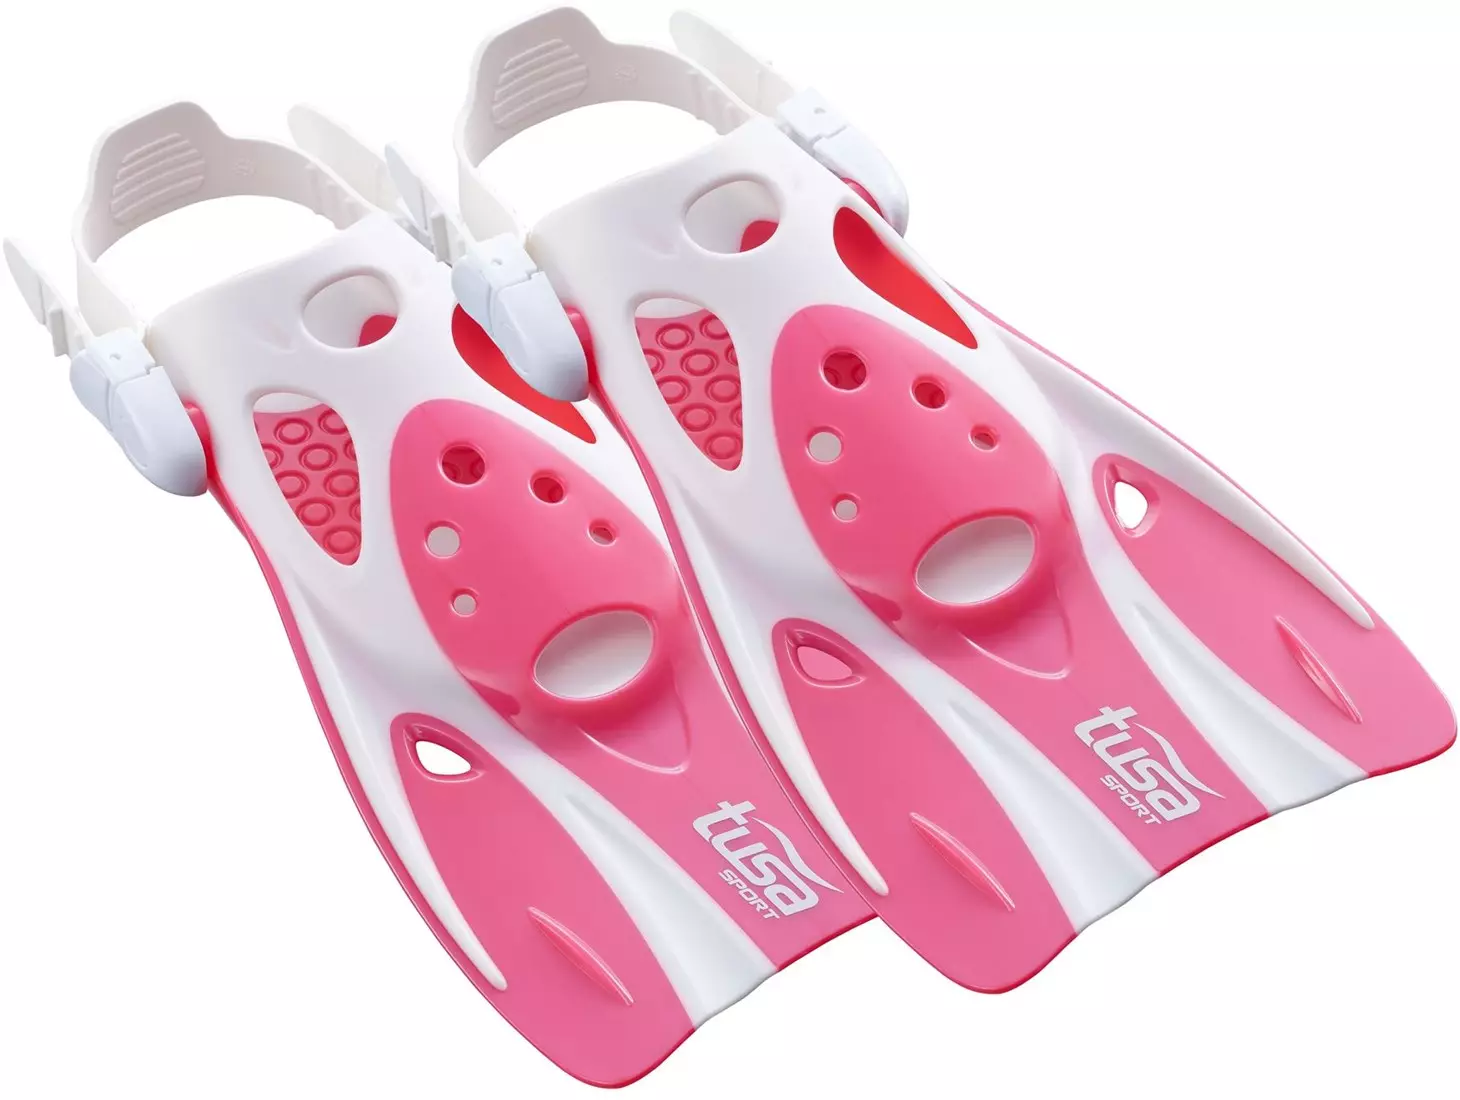 Kindervinnen voor het zwembad: kies verkorte rubber en siliconen flippers om te zwemmen en opleiding 8828_9